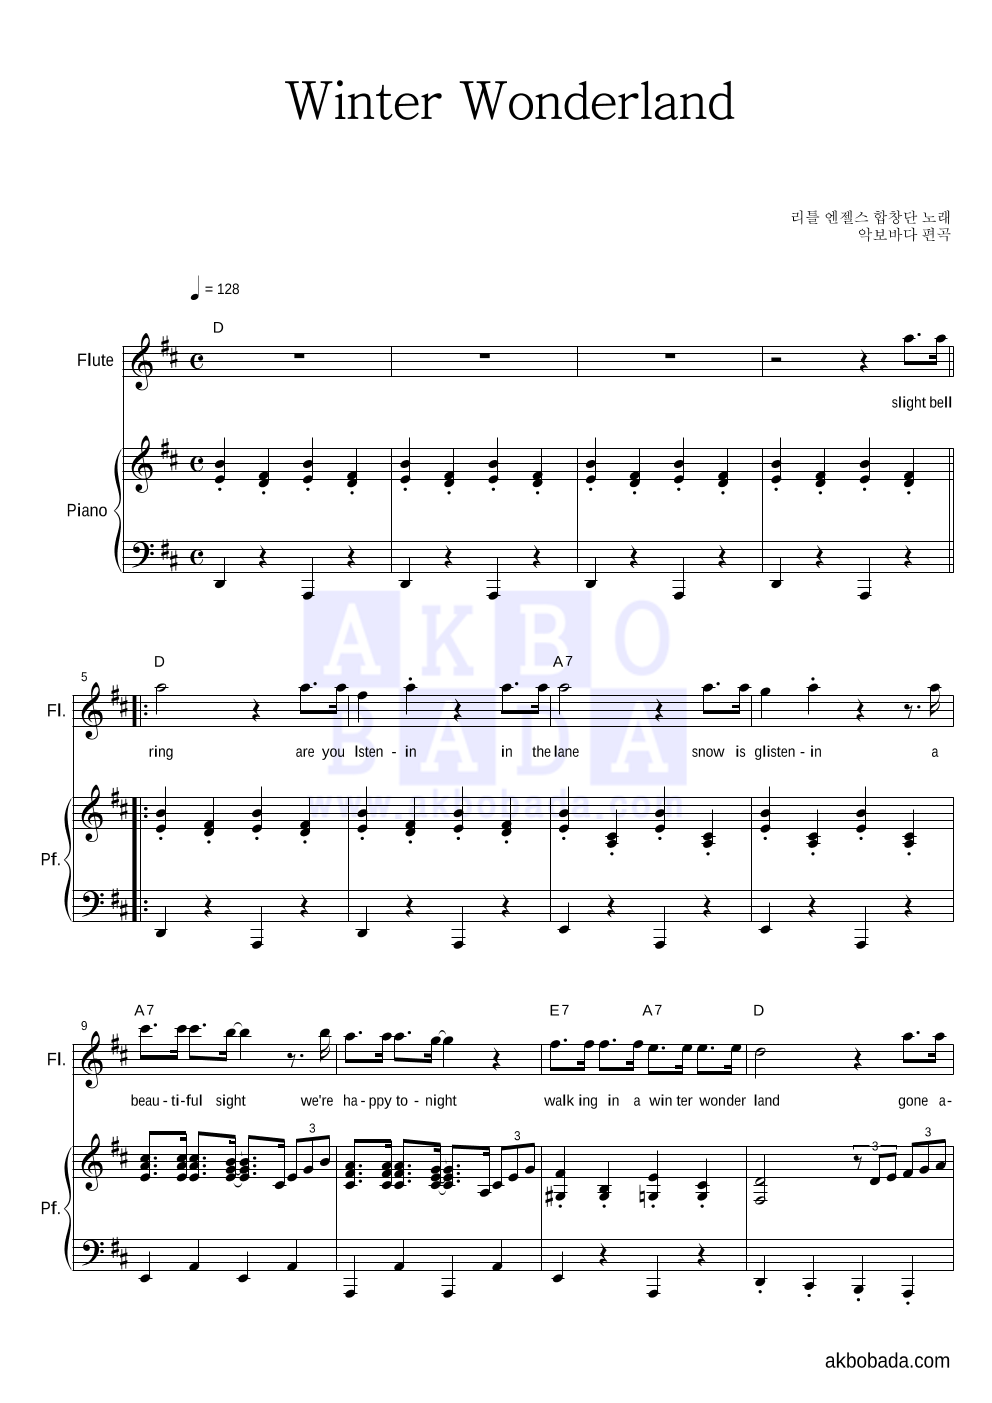 리틀엔젤스 합창단 - Winter Wonderland 플룻&피아노 악보 